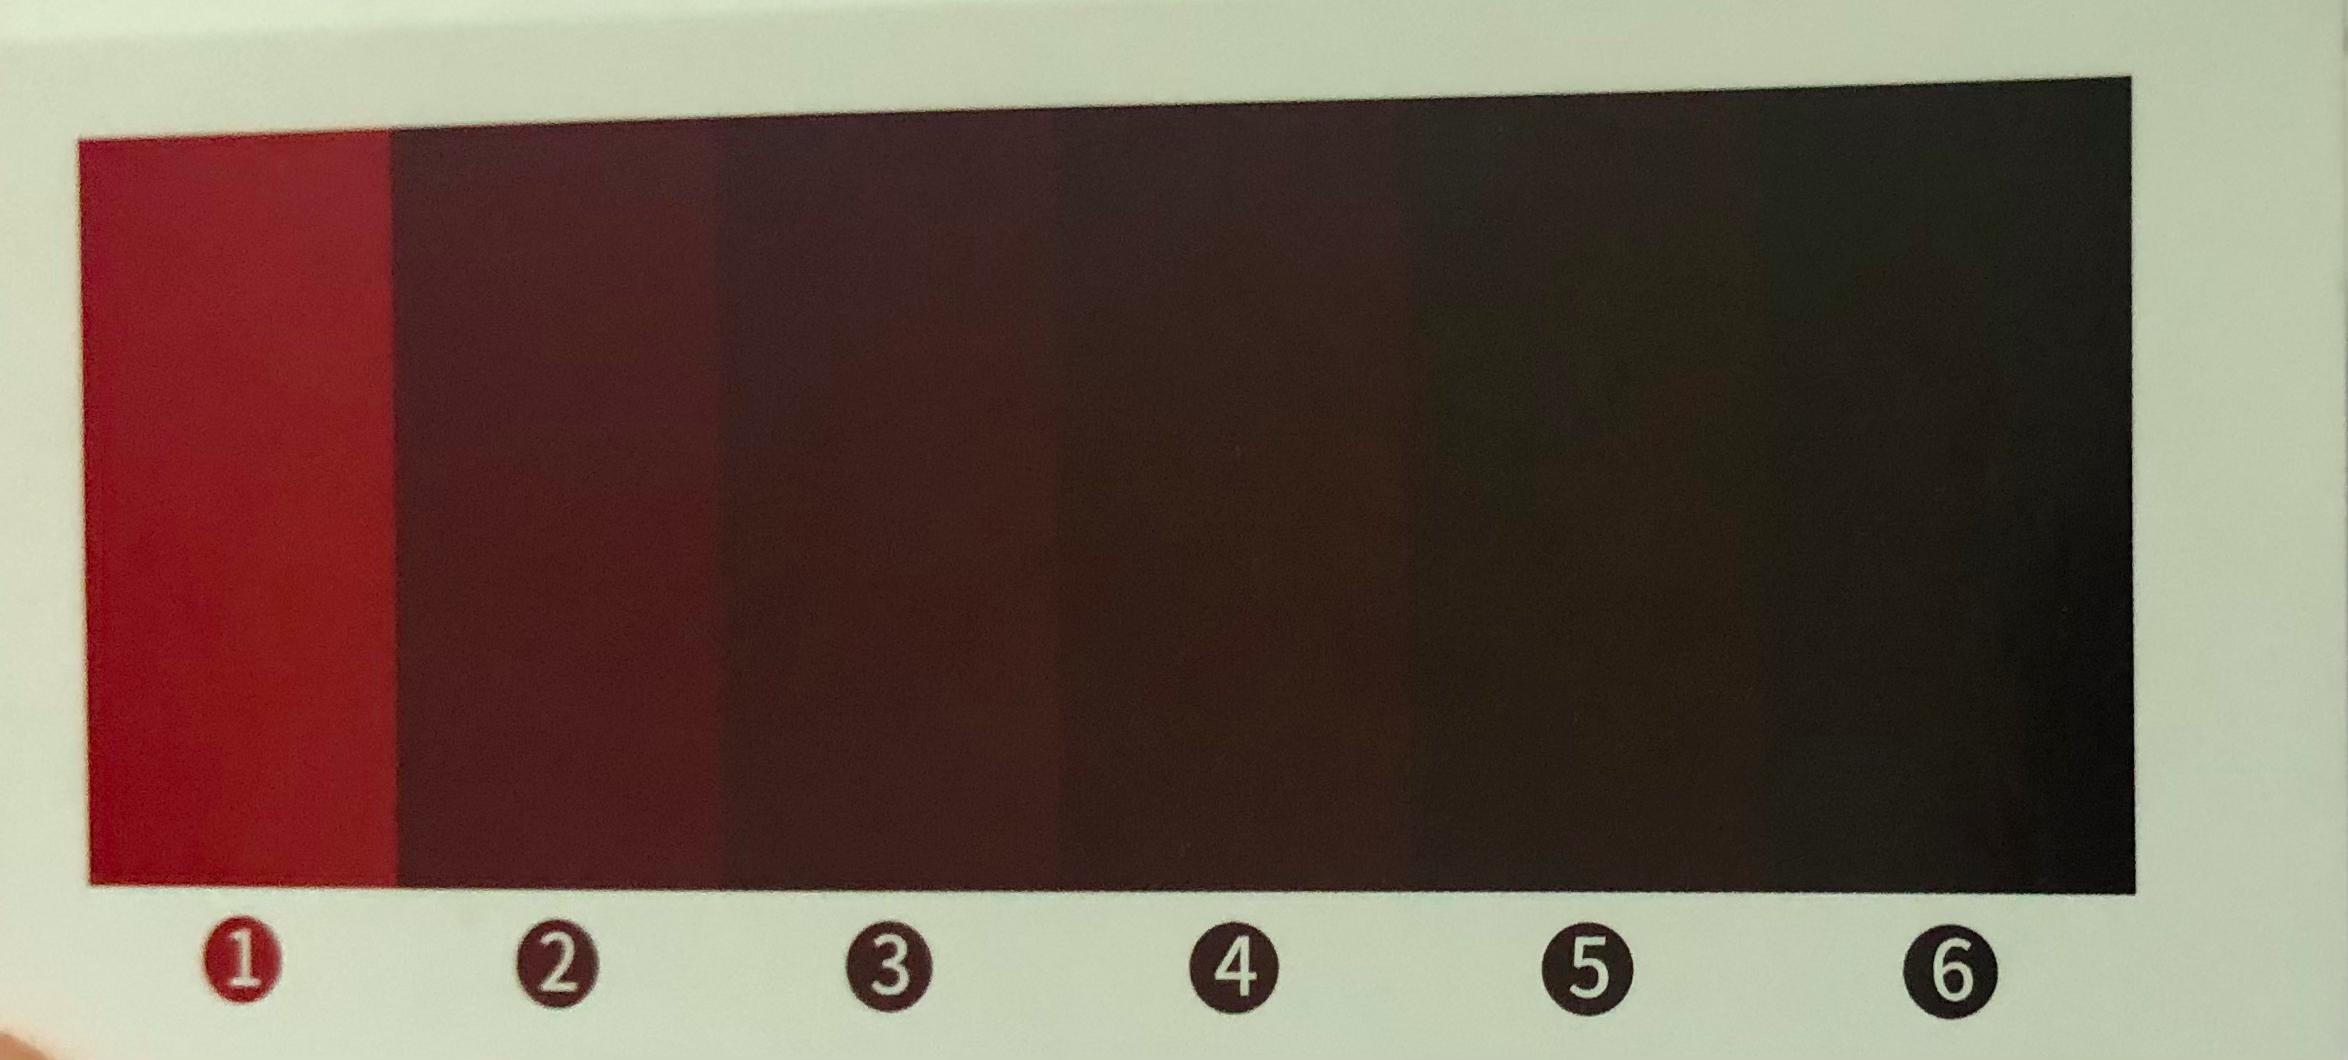 条形卡颜色图上六种颜色都是血液的颜色